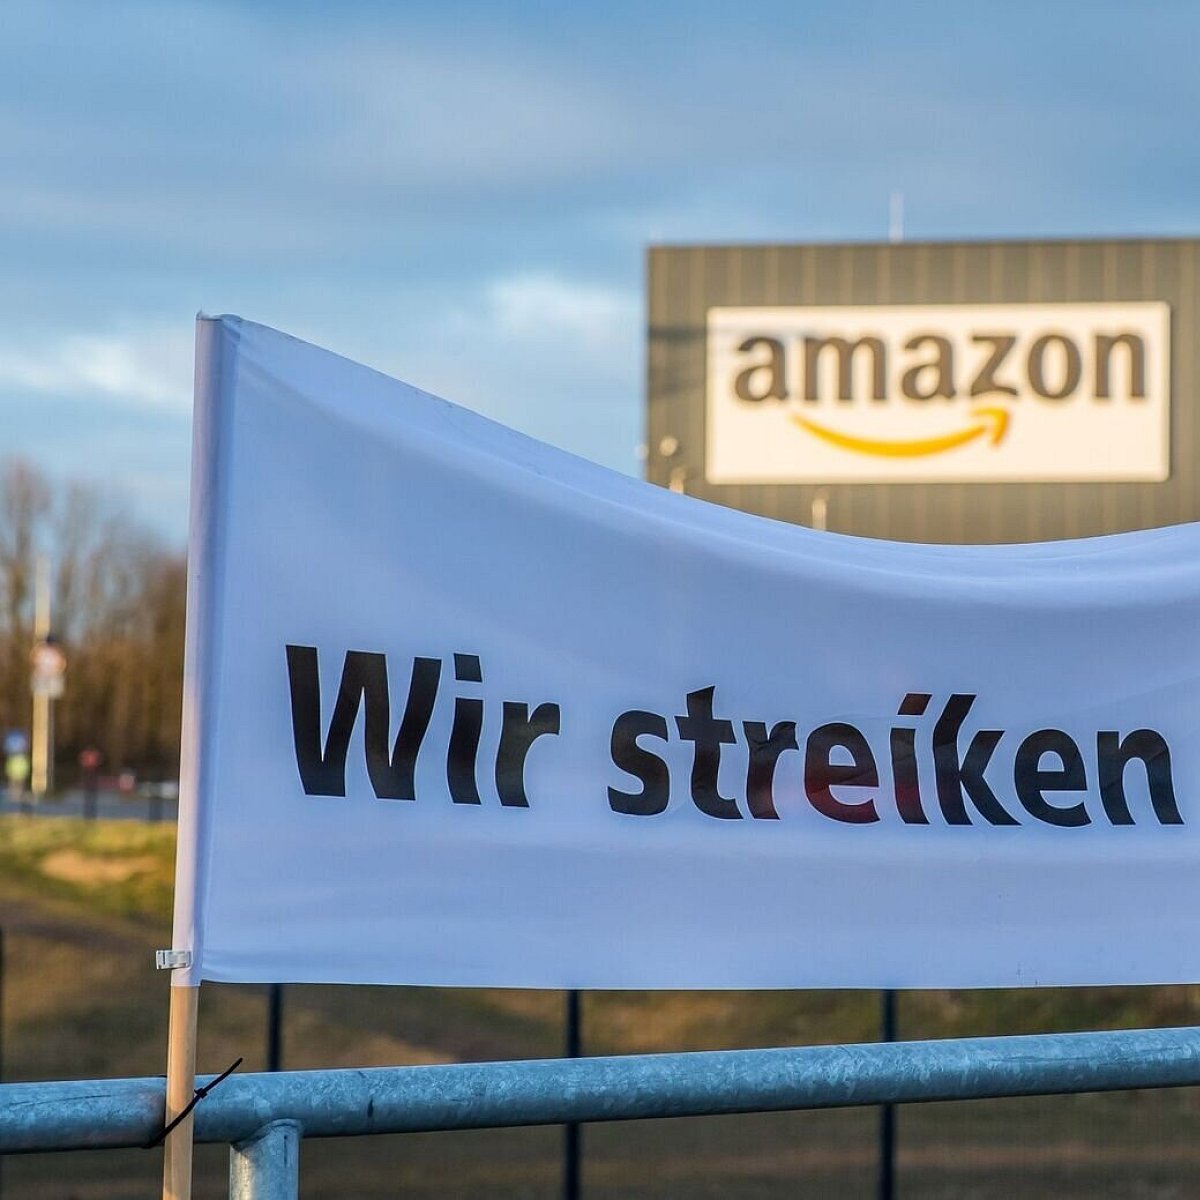 Radnici Amazona natpis na bijelom štrajk ispred amazona